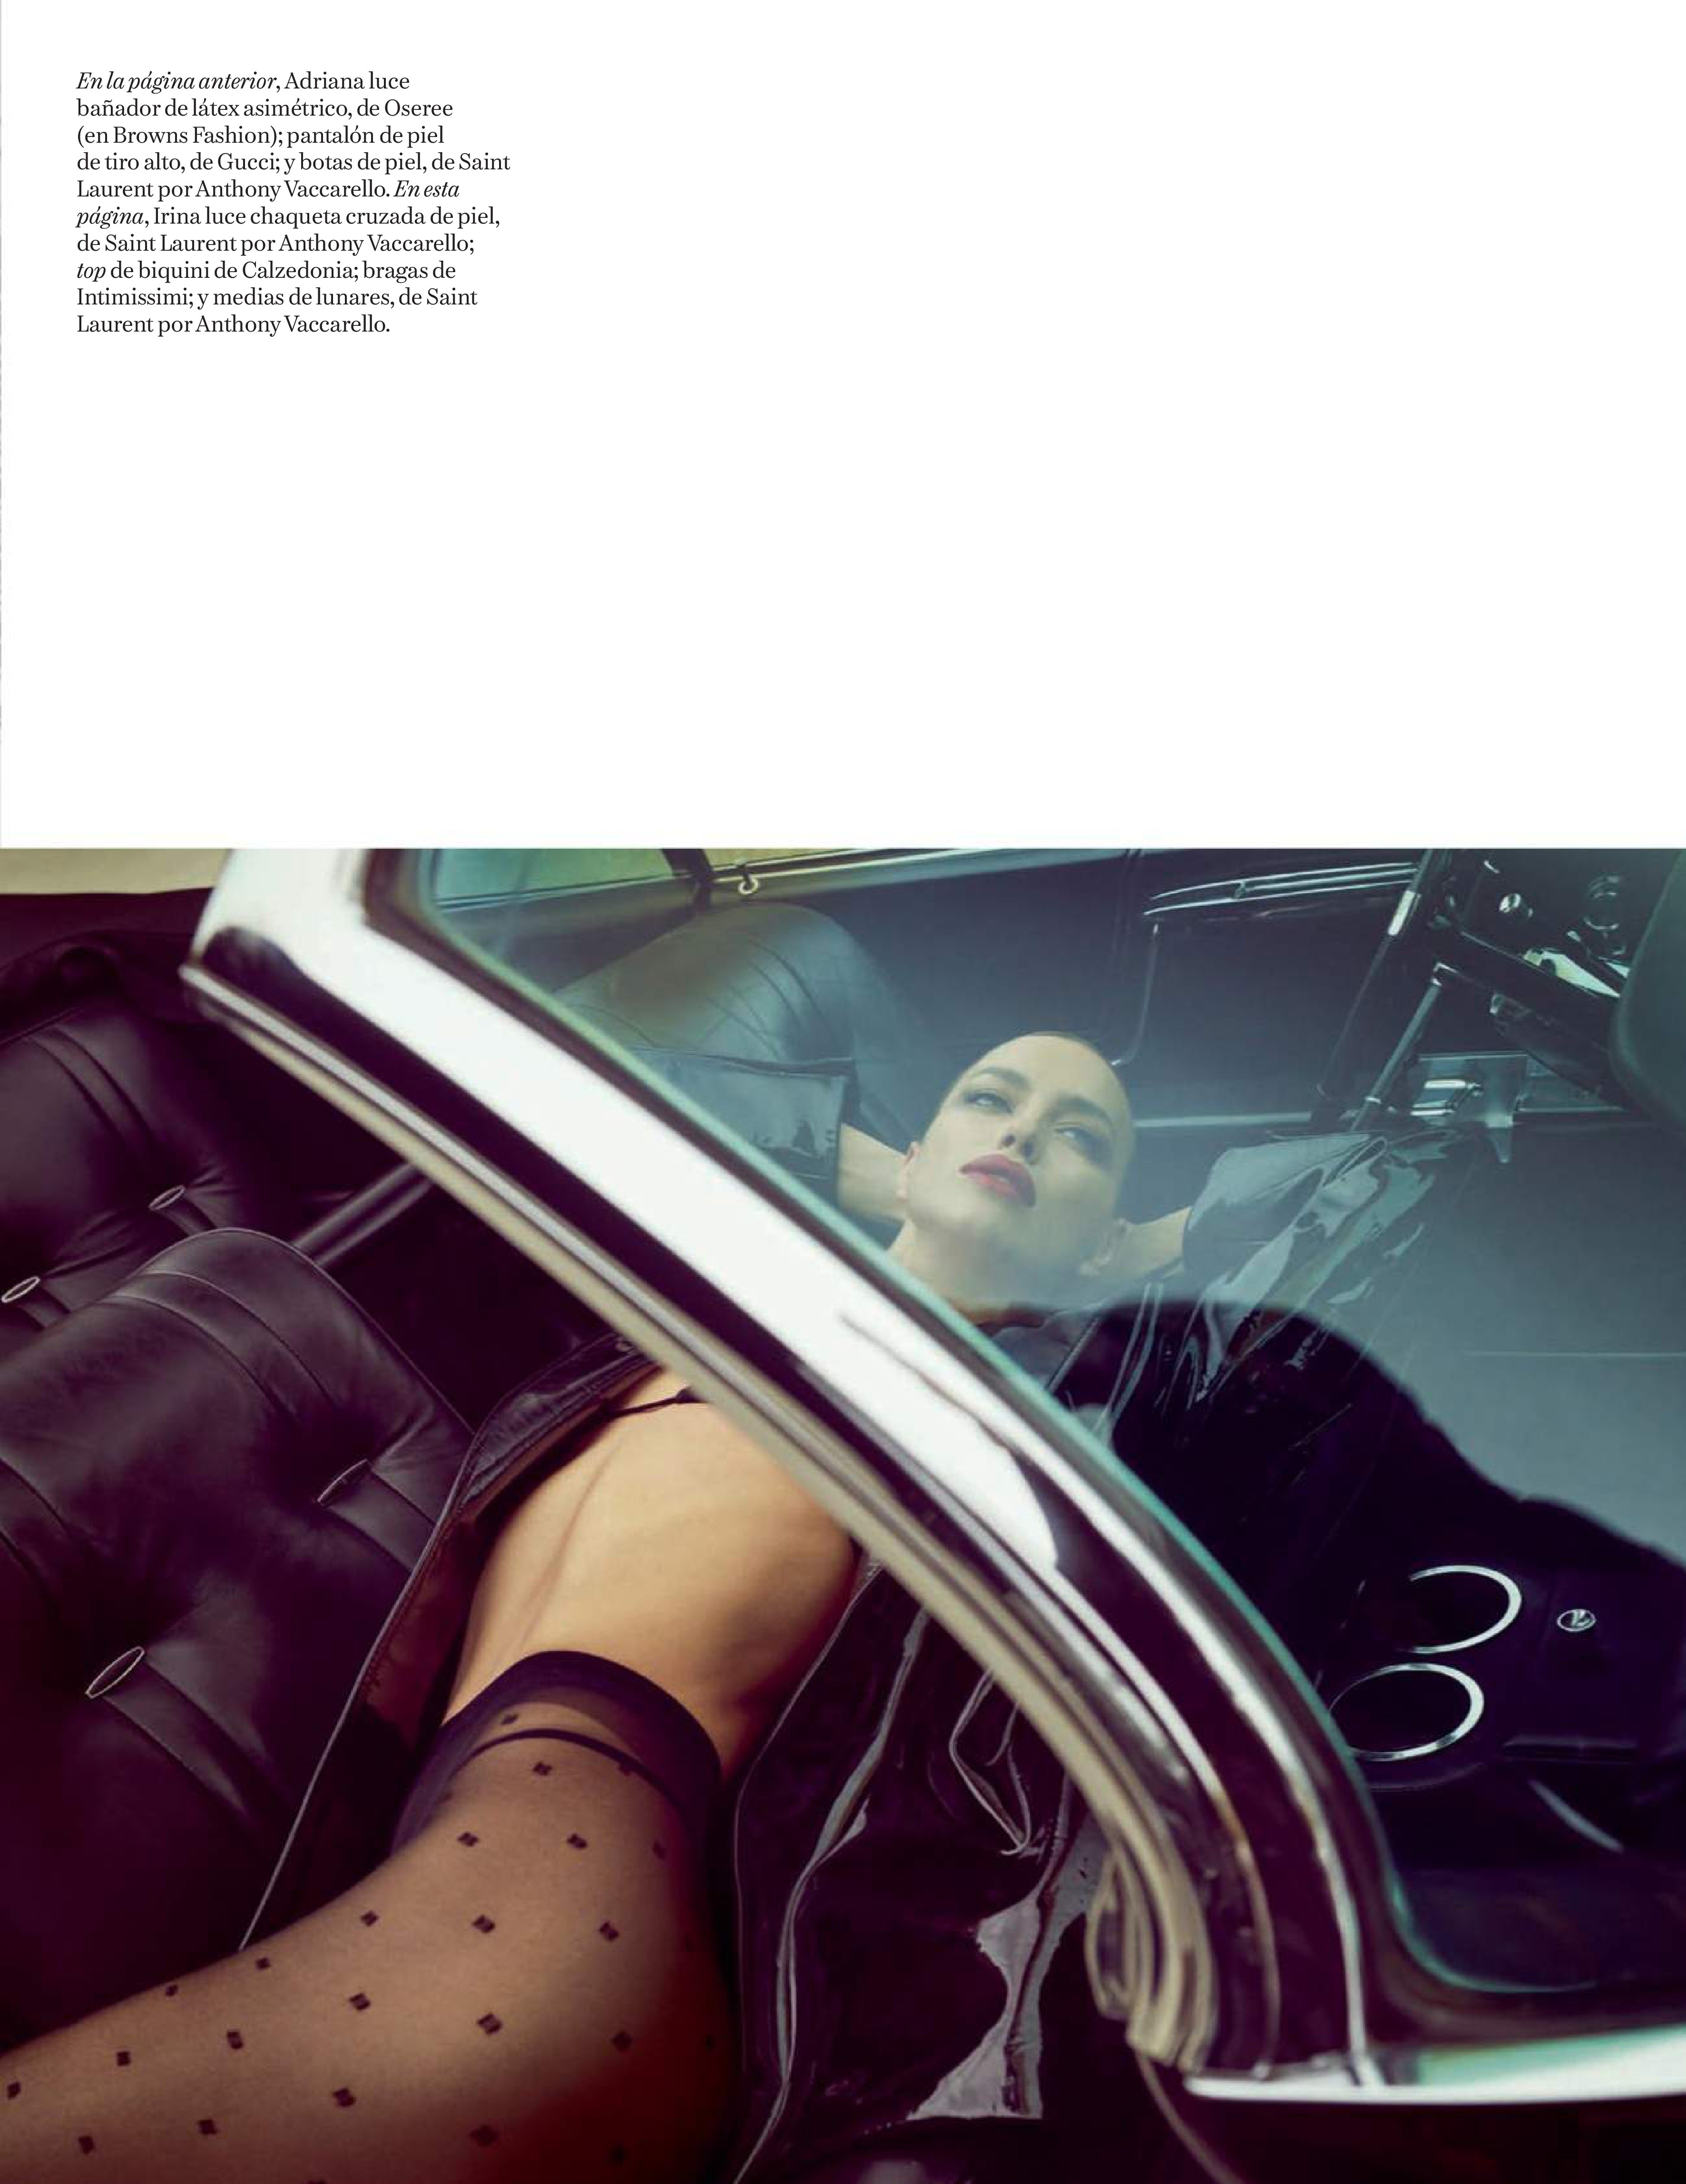 Adriana Lima Irina Shayk TheFappening.Pro 15 - Adriana Lima & Irina Shayk for Vogue Spain (22 Photos)